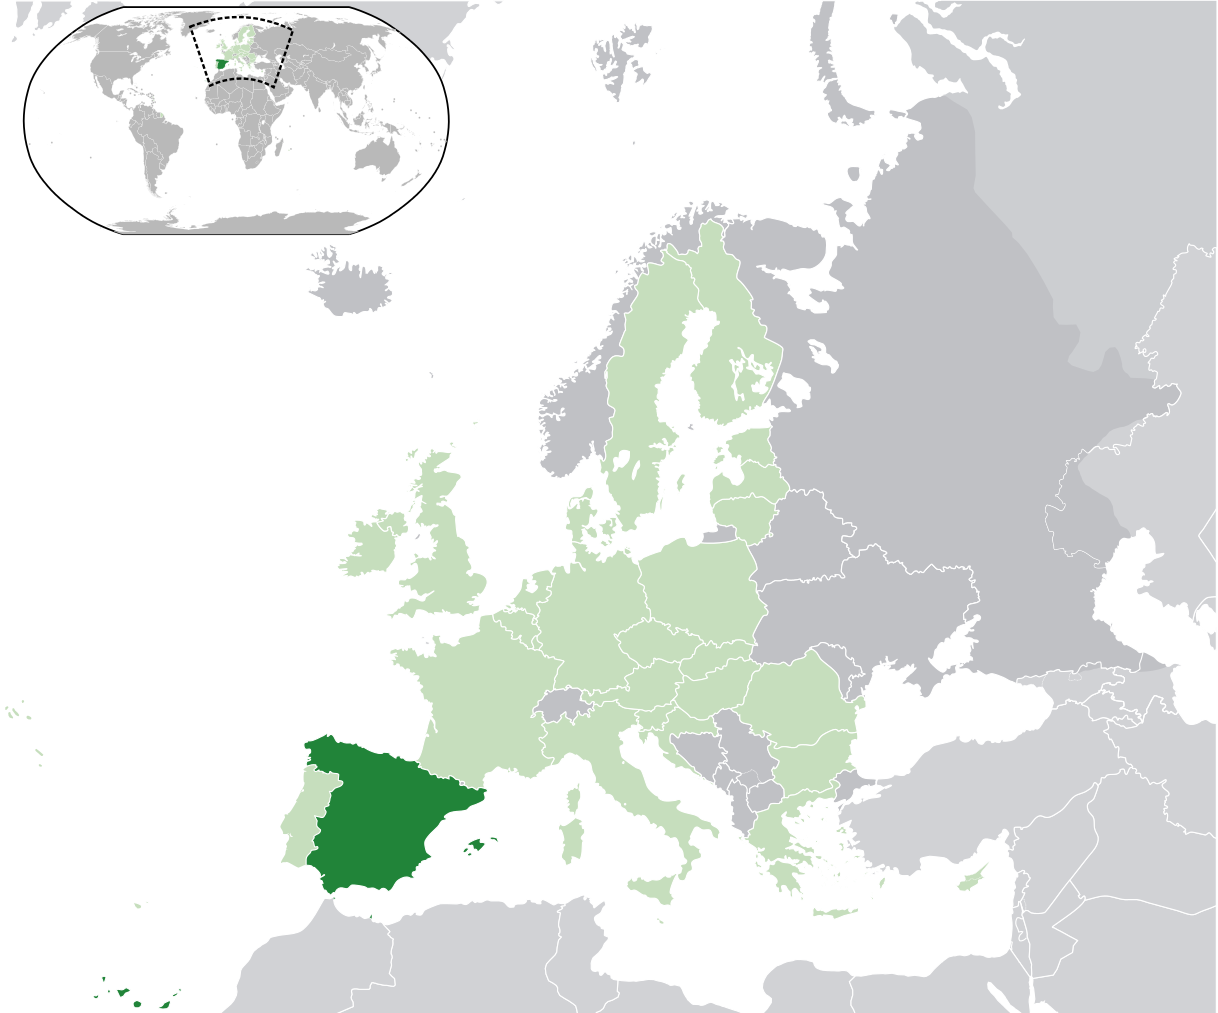 Расположение Испании